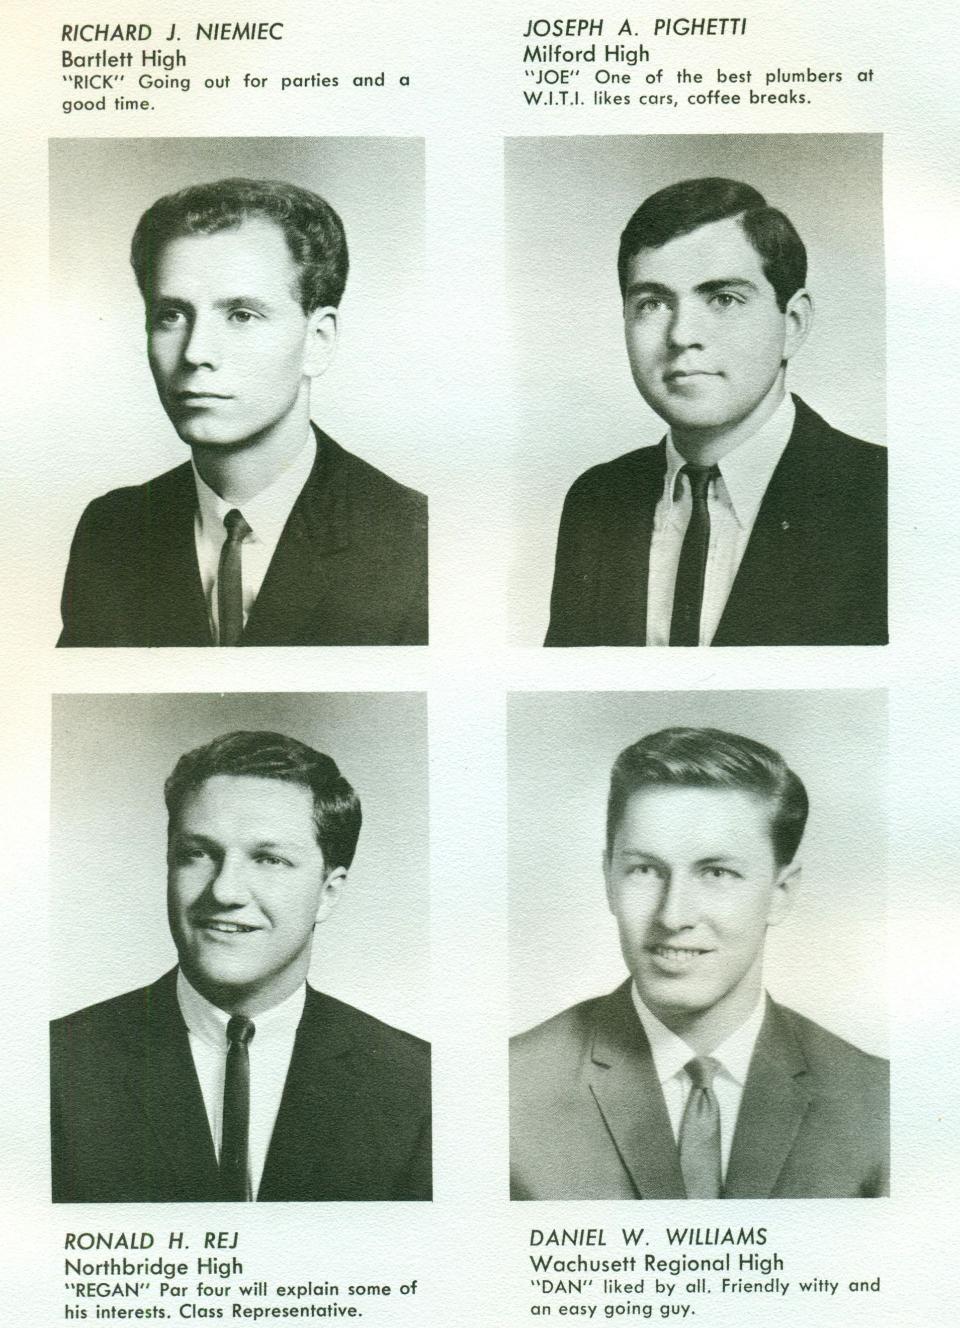 Worcester Industrial Technical Institute Class of 1967 Yearbook Plumbing Sheet Metal